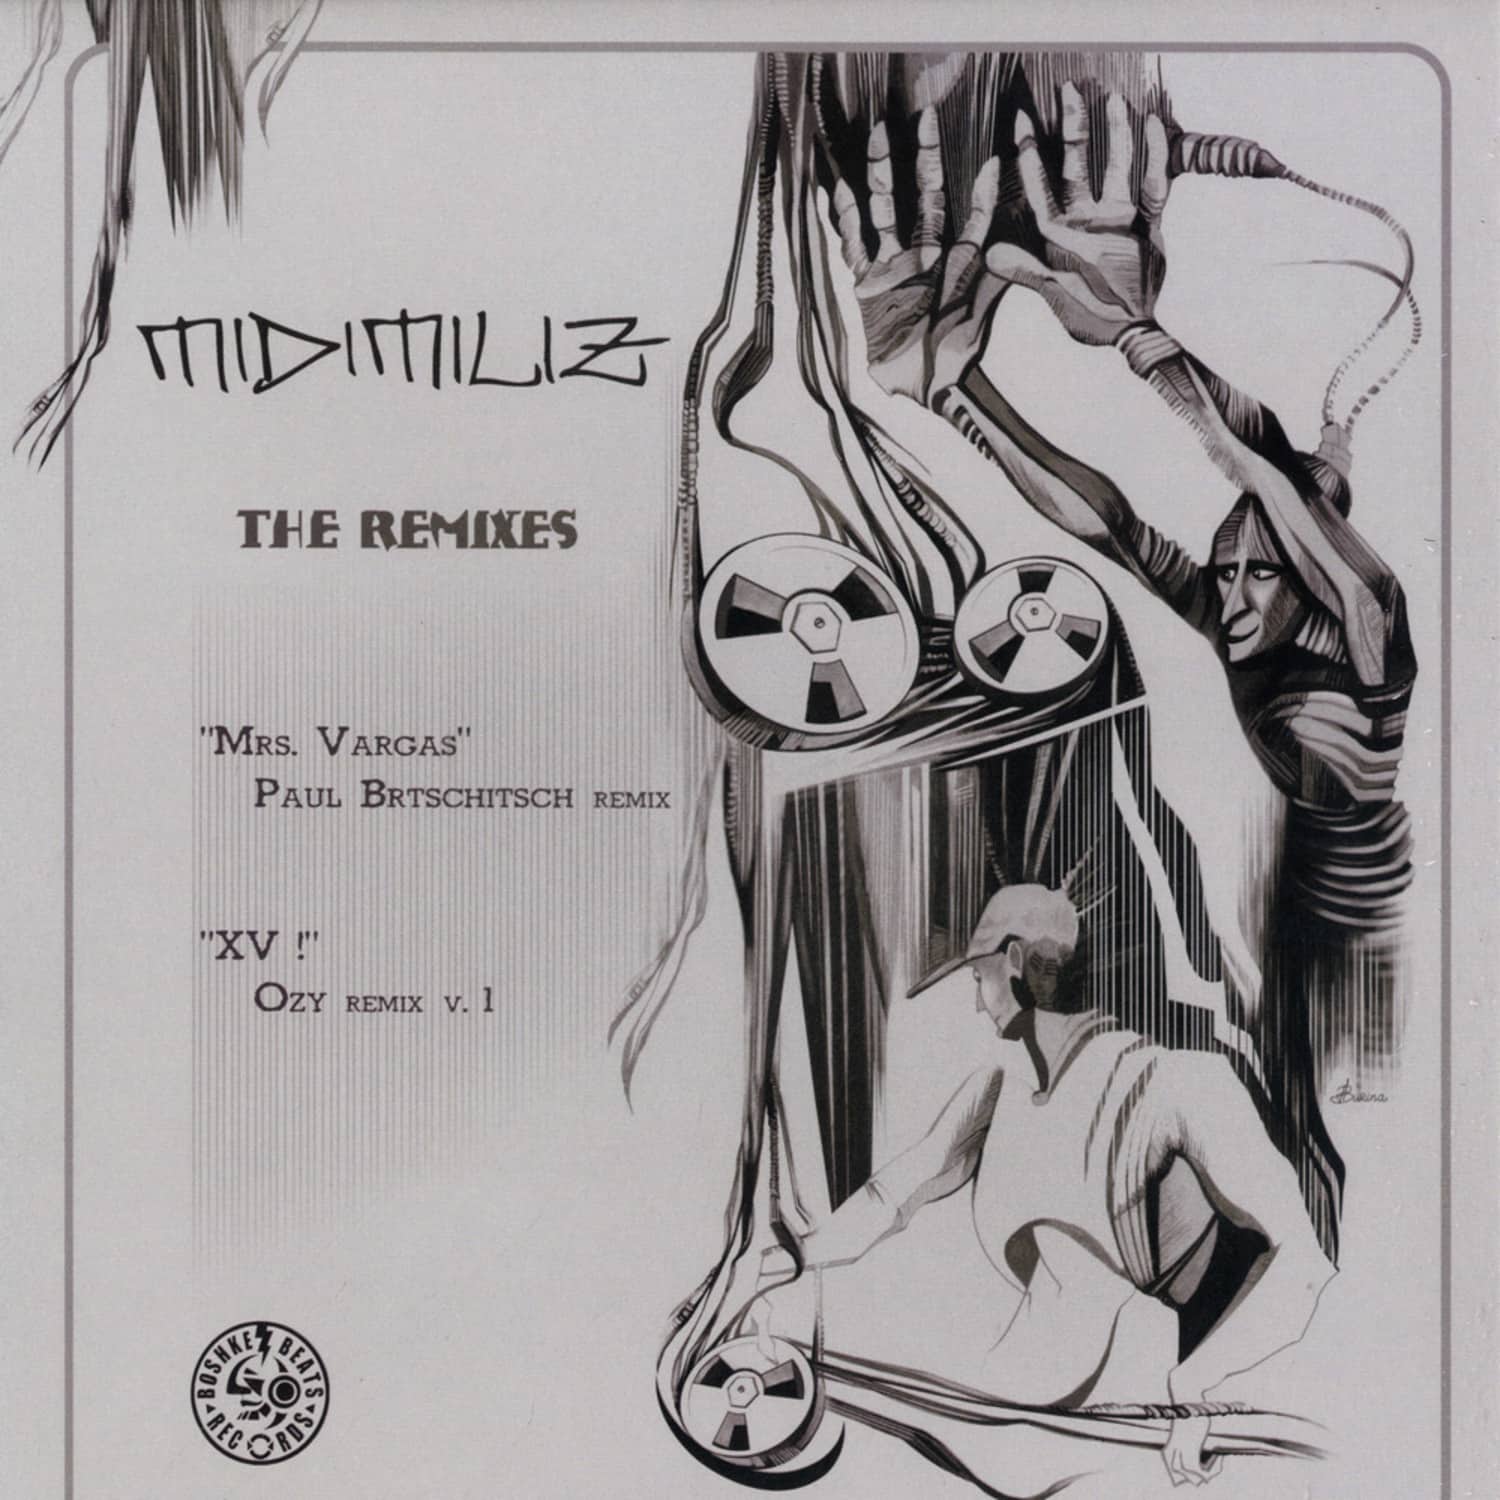 Midimiliz - THE REMIXES